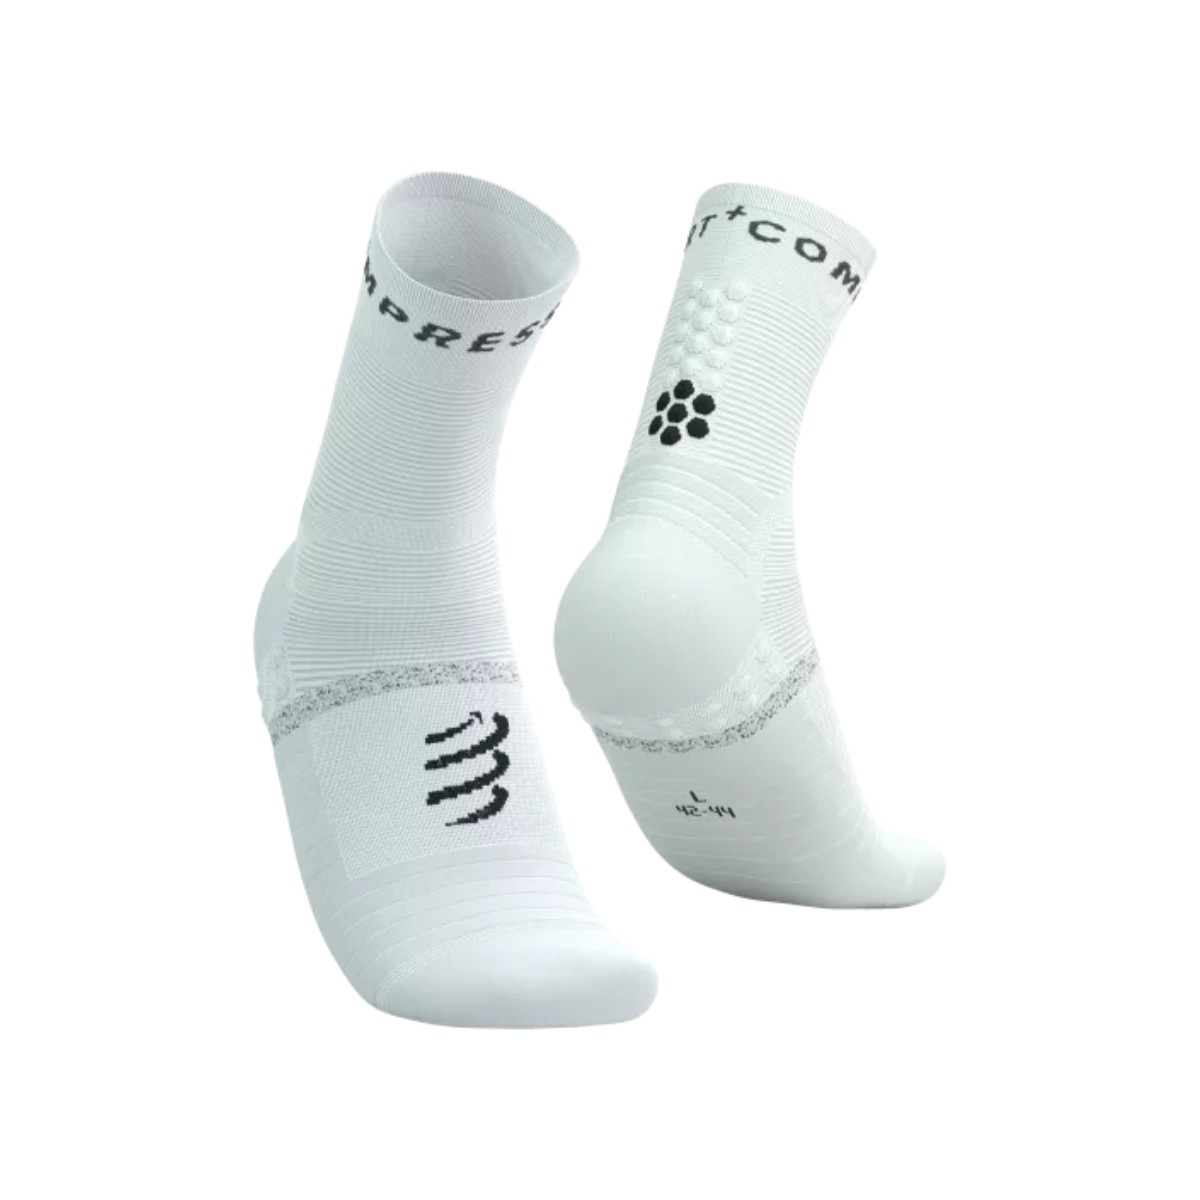 ist unser günstig Kaufen-Pro Marathon Socken V2.0 - Weiß Schwarz, Größe Größe 2. Pro Marathon Socken V2.0 - Weiß Schwarz, Größe Größe 2 <![CDATA[Pro Marathon Sock Anti-Blister-Laufsocken Beleben Sie Ihr Lauferlebnis mit unseren Pr